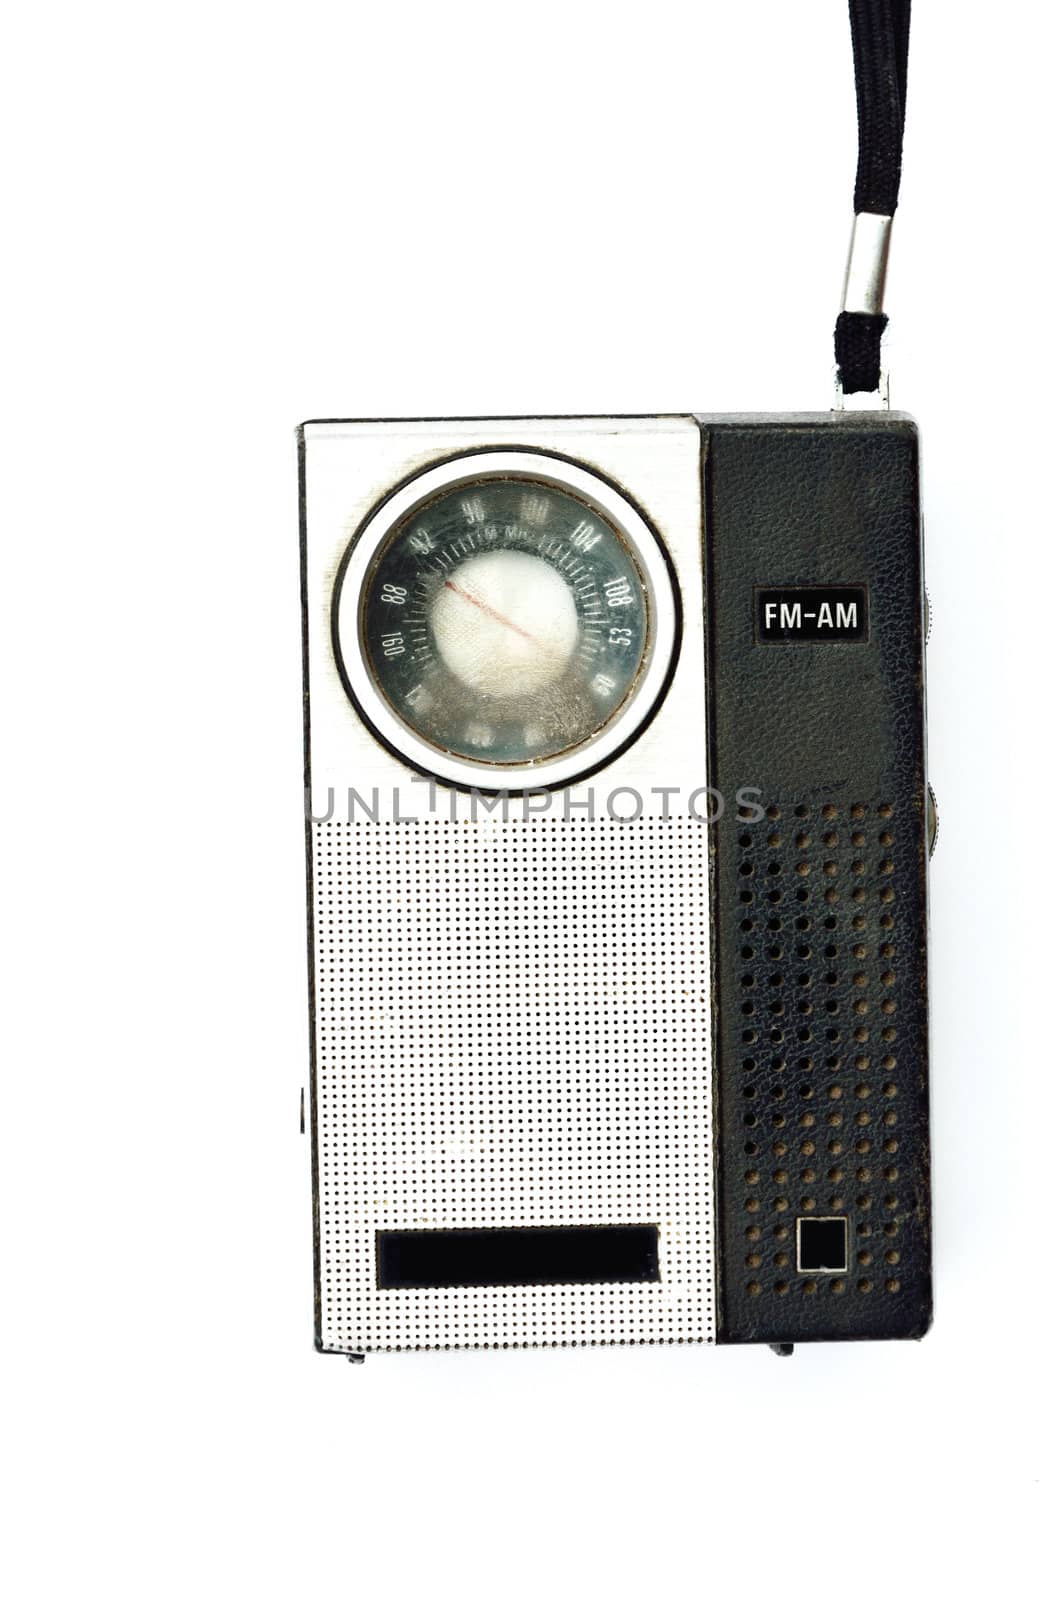 Retro pocket radio on white background, Mass communication concept